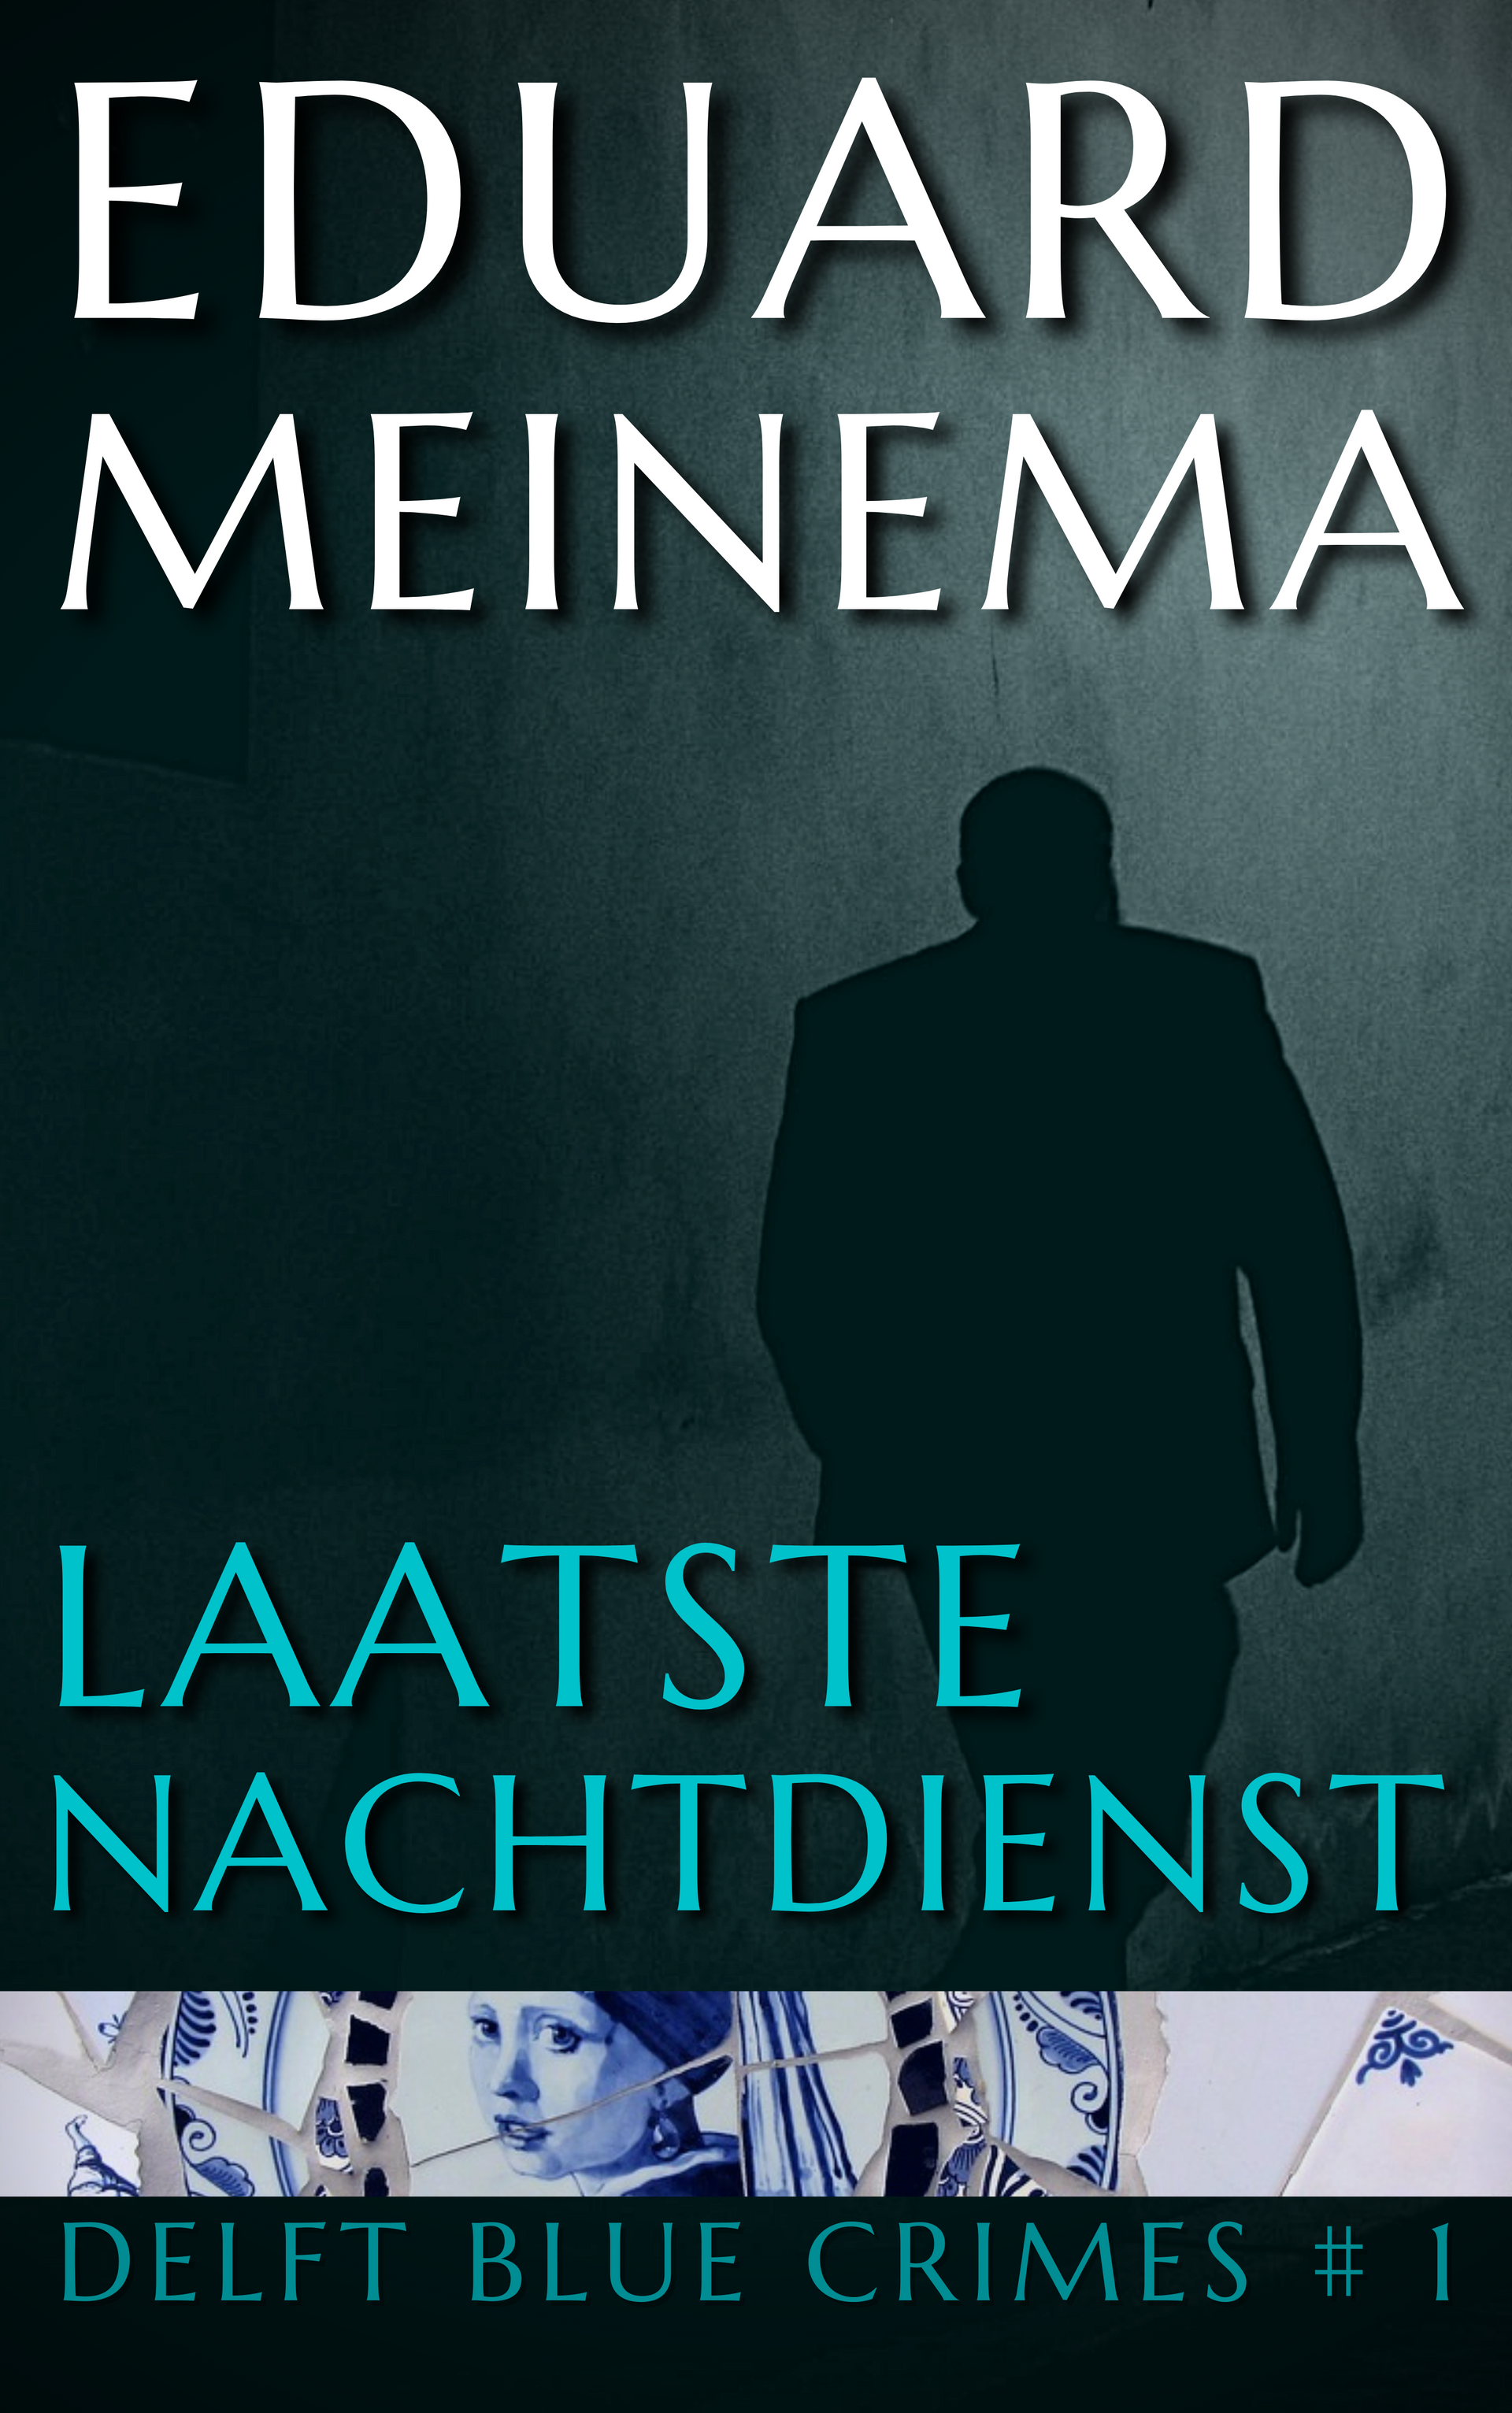 Delft Blue Crimes #1 Laatste nachtdienst: Eduard Meinema.